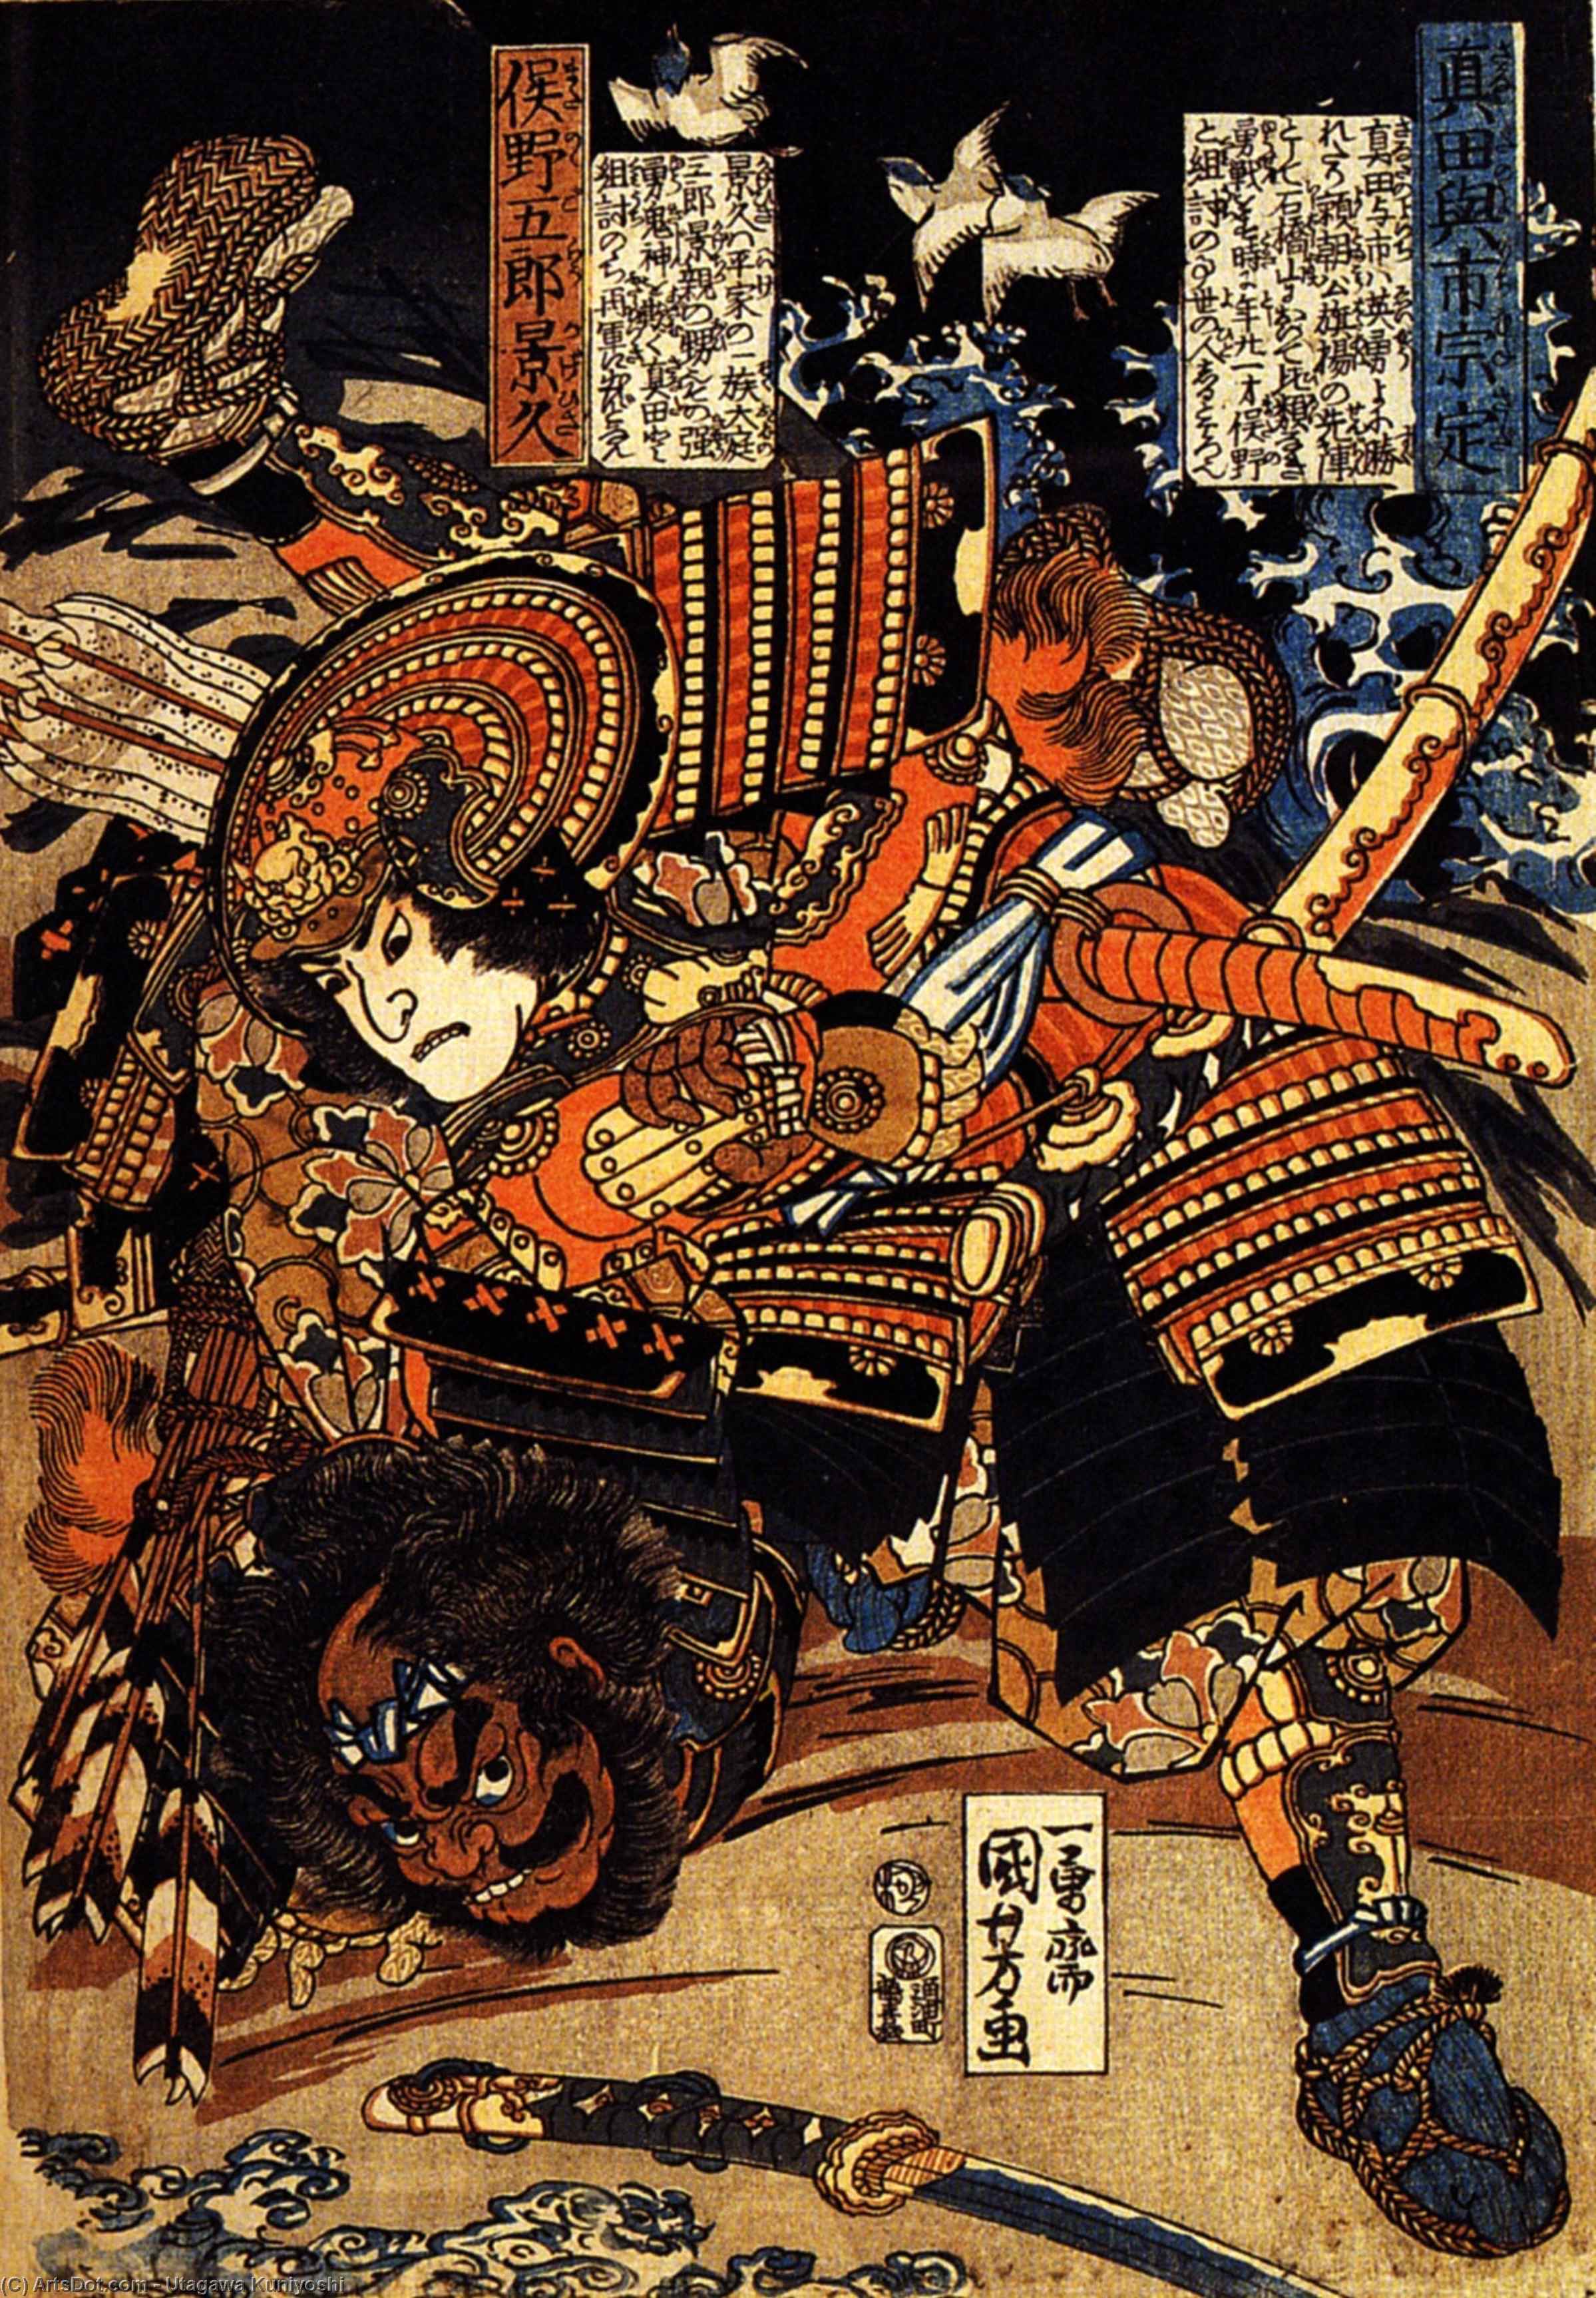 WikiOO.org - Encyclopedia of Fine Arts - Maleri, Artwork Utagawa Kuniyoshi - Kagehisa and Yoshitada wrestling